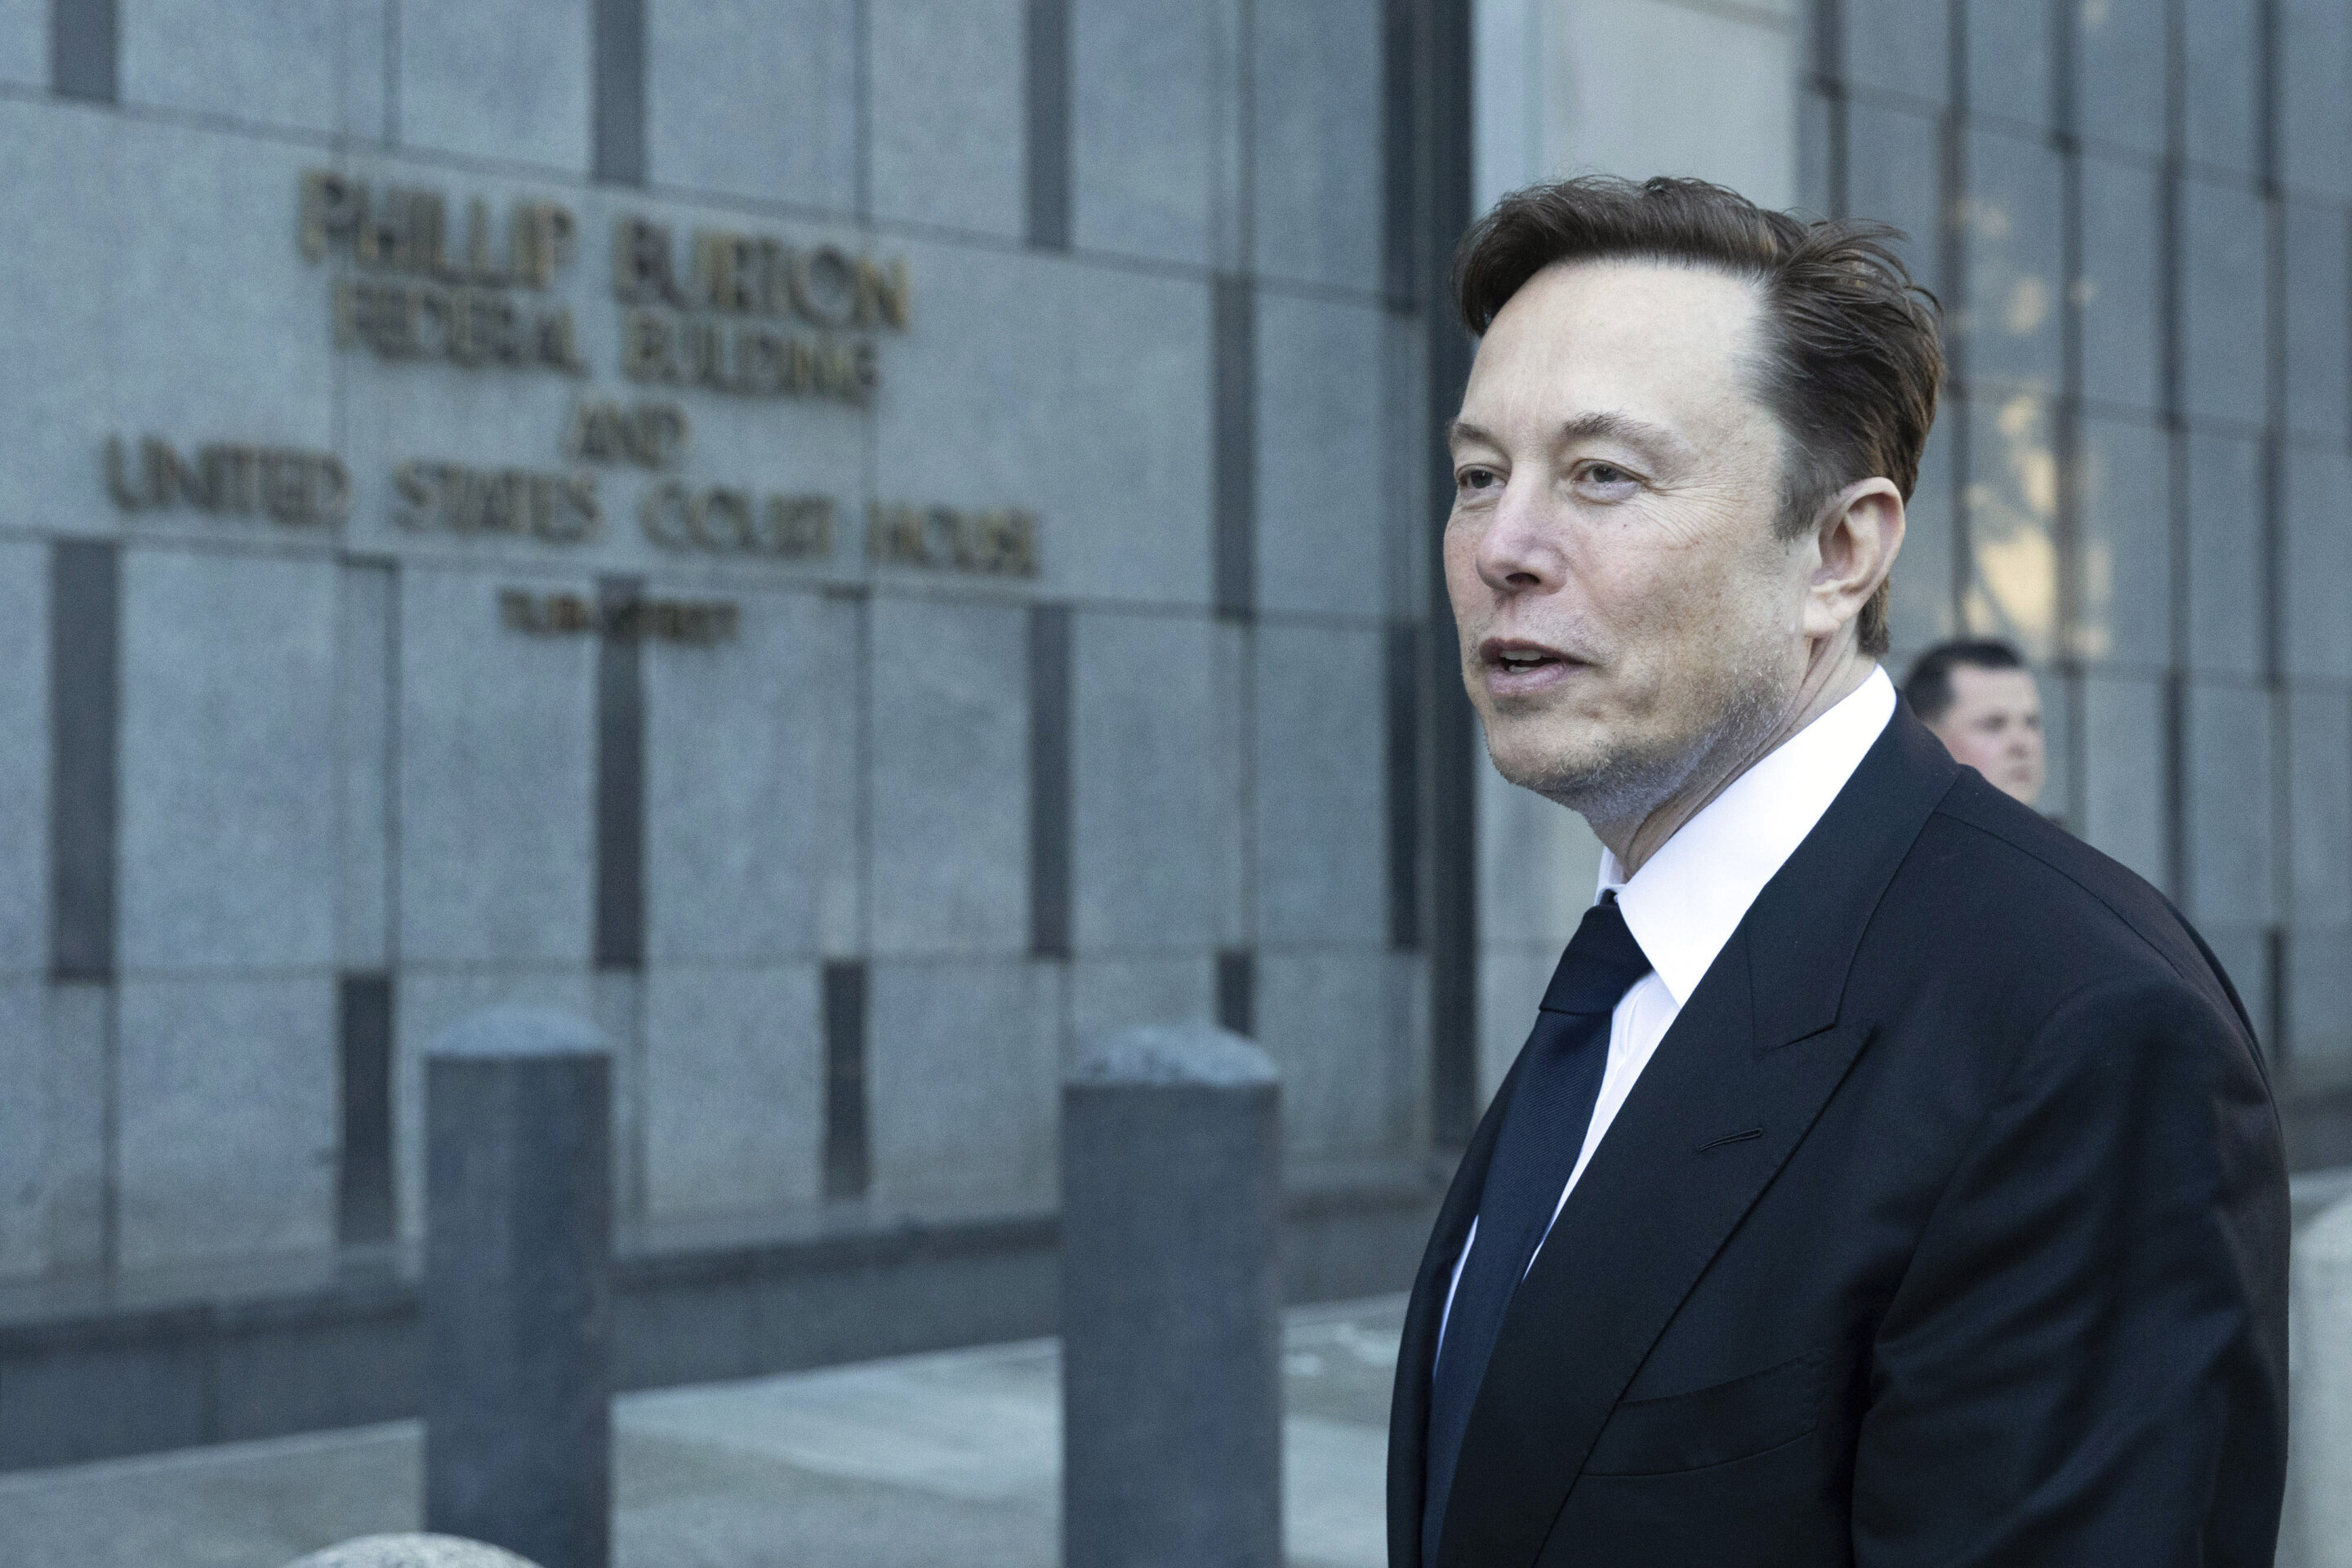 #Elon Musk’s mysterious ways on display in Tesla tweet trial